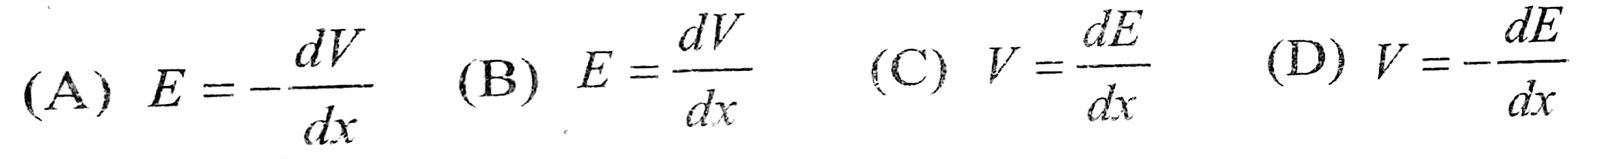 विधुत्-क्षेत्र E और विभव v के बीच सम्बन्ध होता है